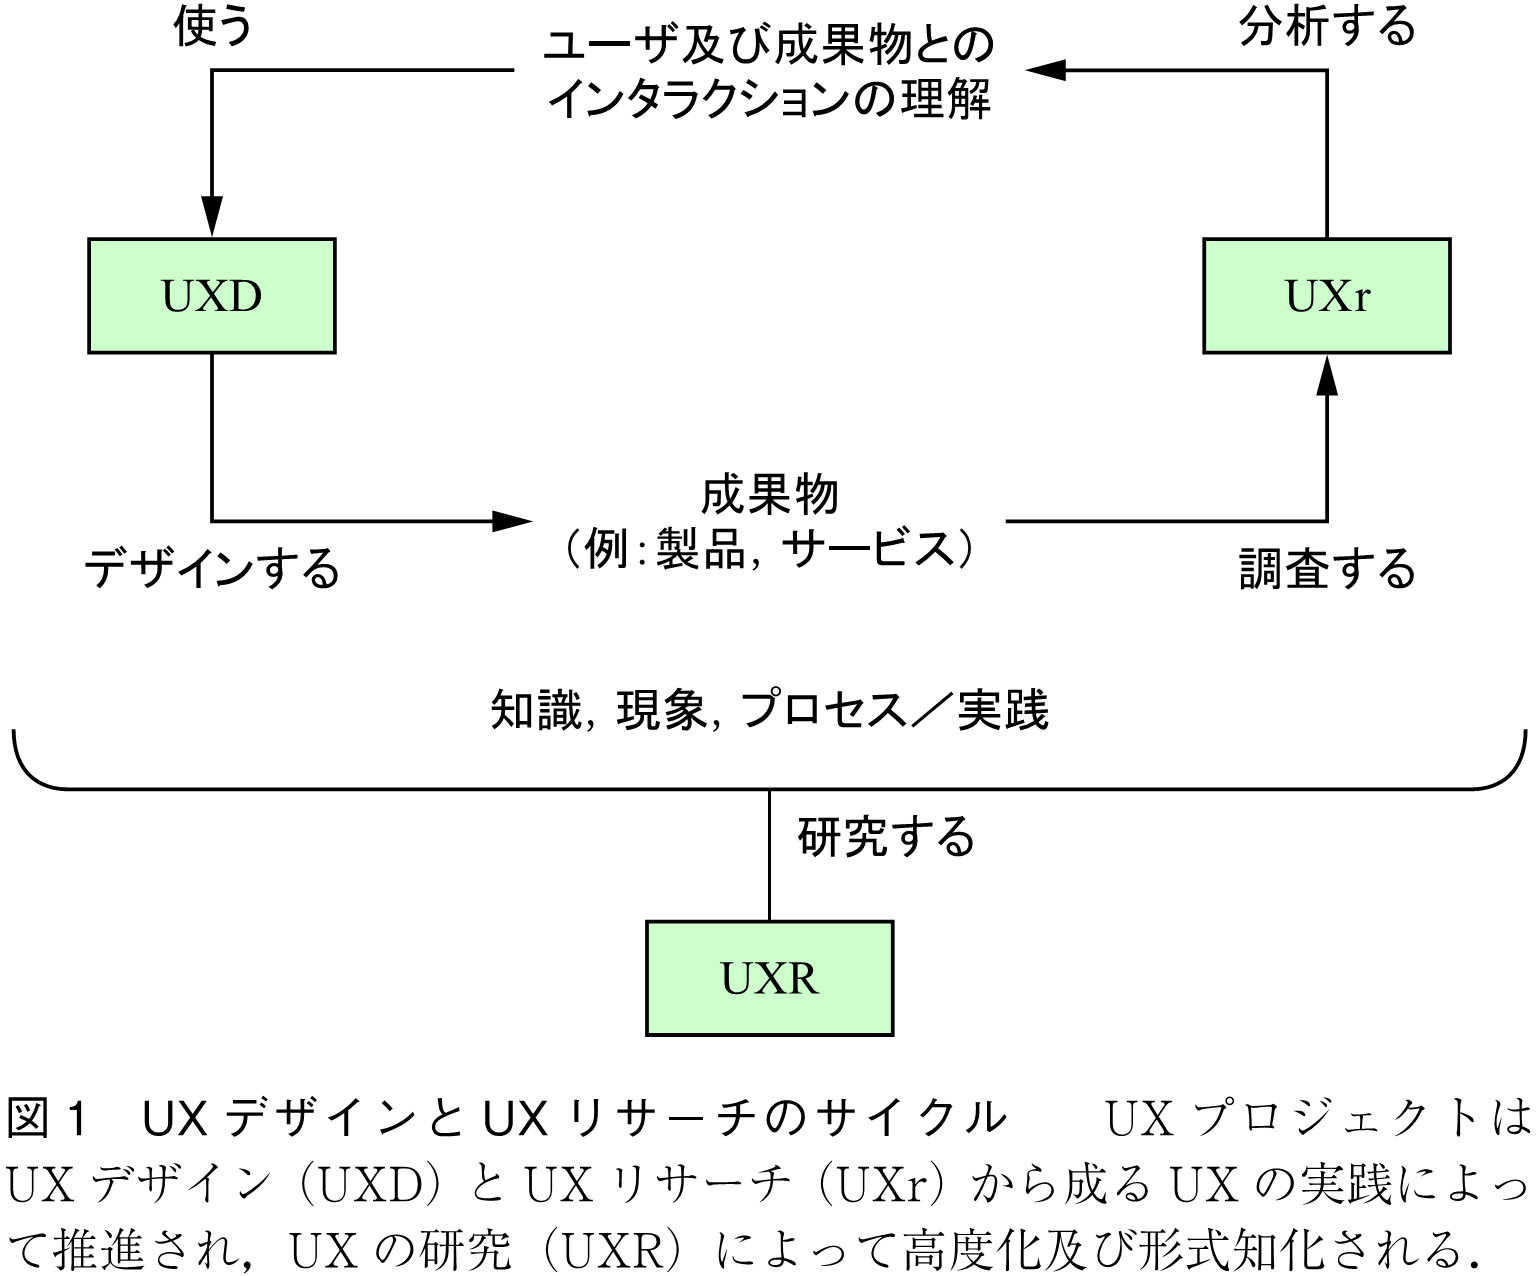 図1　UXデザインとUXリサーチのサイクル　　UXプロジェクトはUXデザイン（UXD）とUXリサーチ（UXr）から成るUXの実践によって推進され，UXの研究（UXR）によって高度化及び形式知化される．